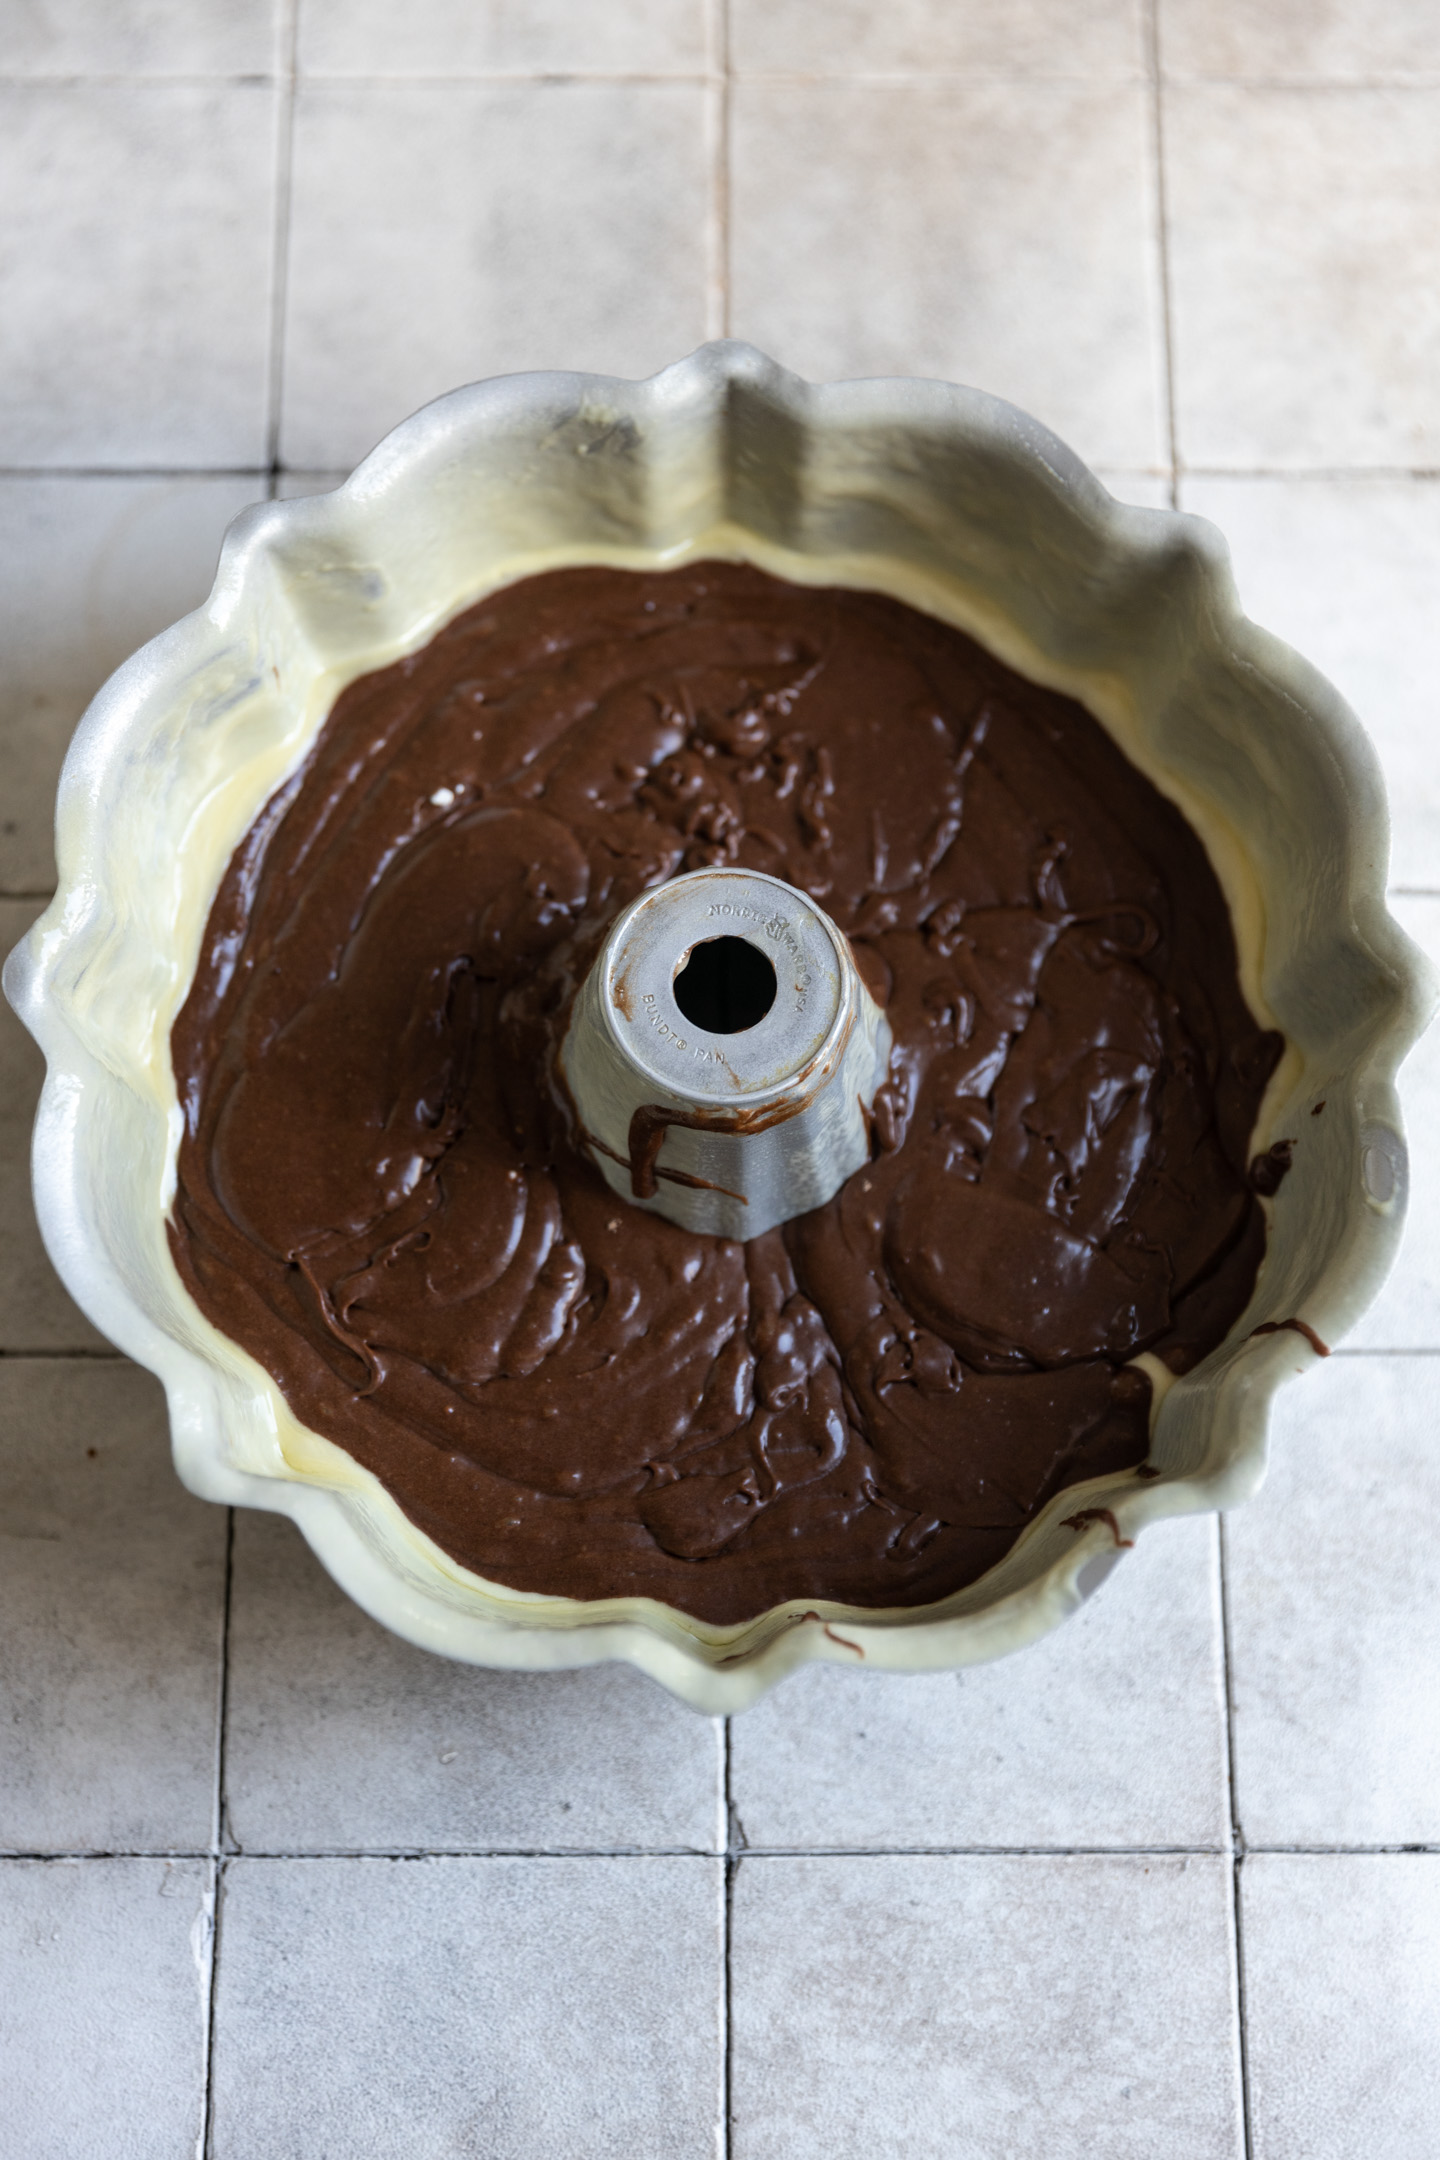 Brownie cake batter in a greased bundt pan.